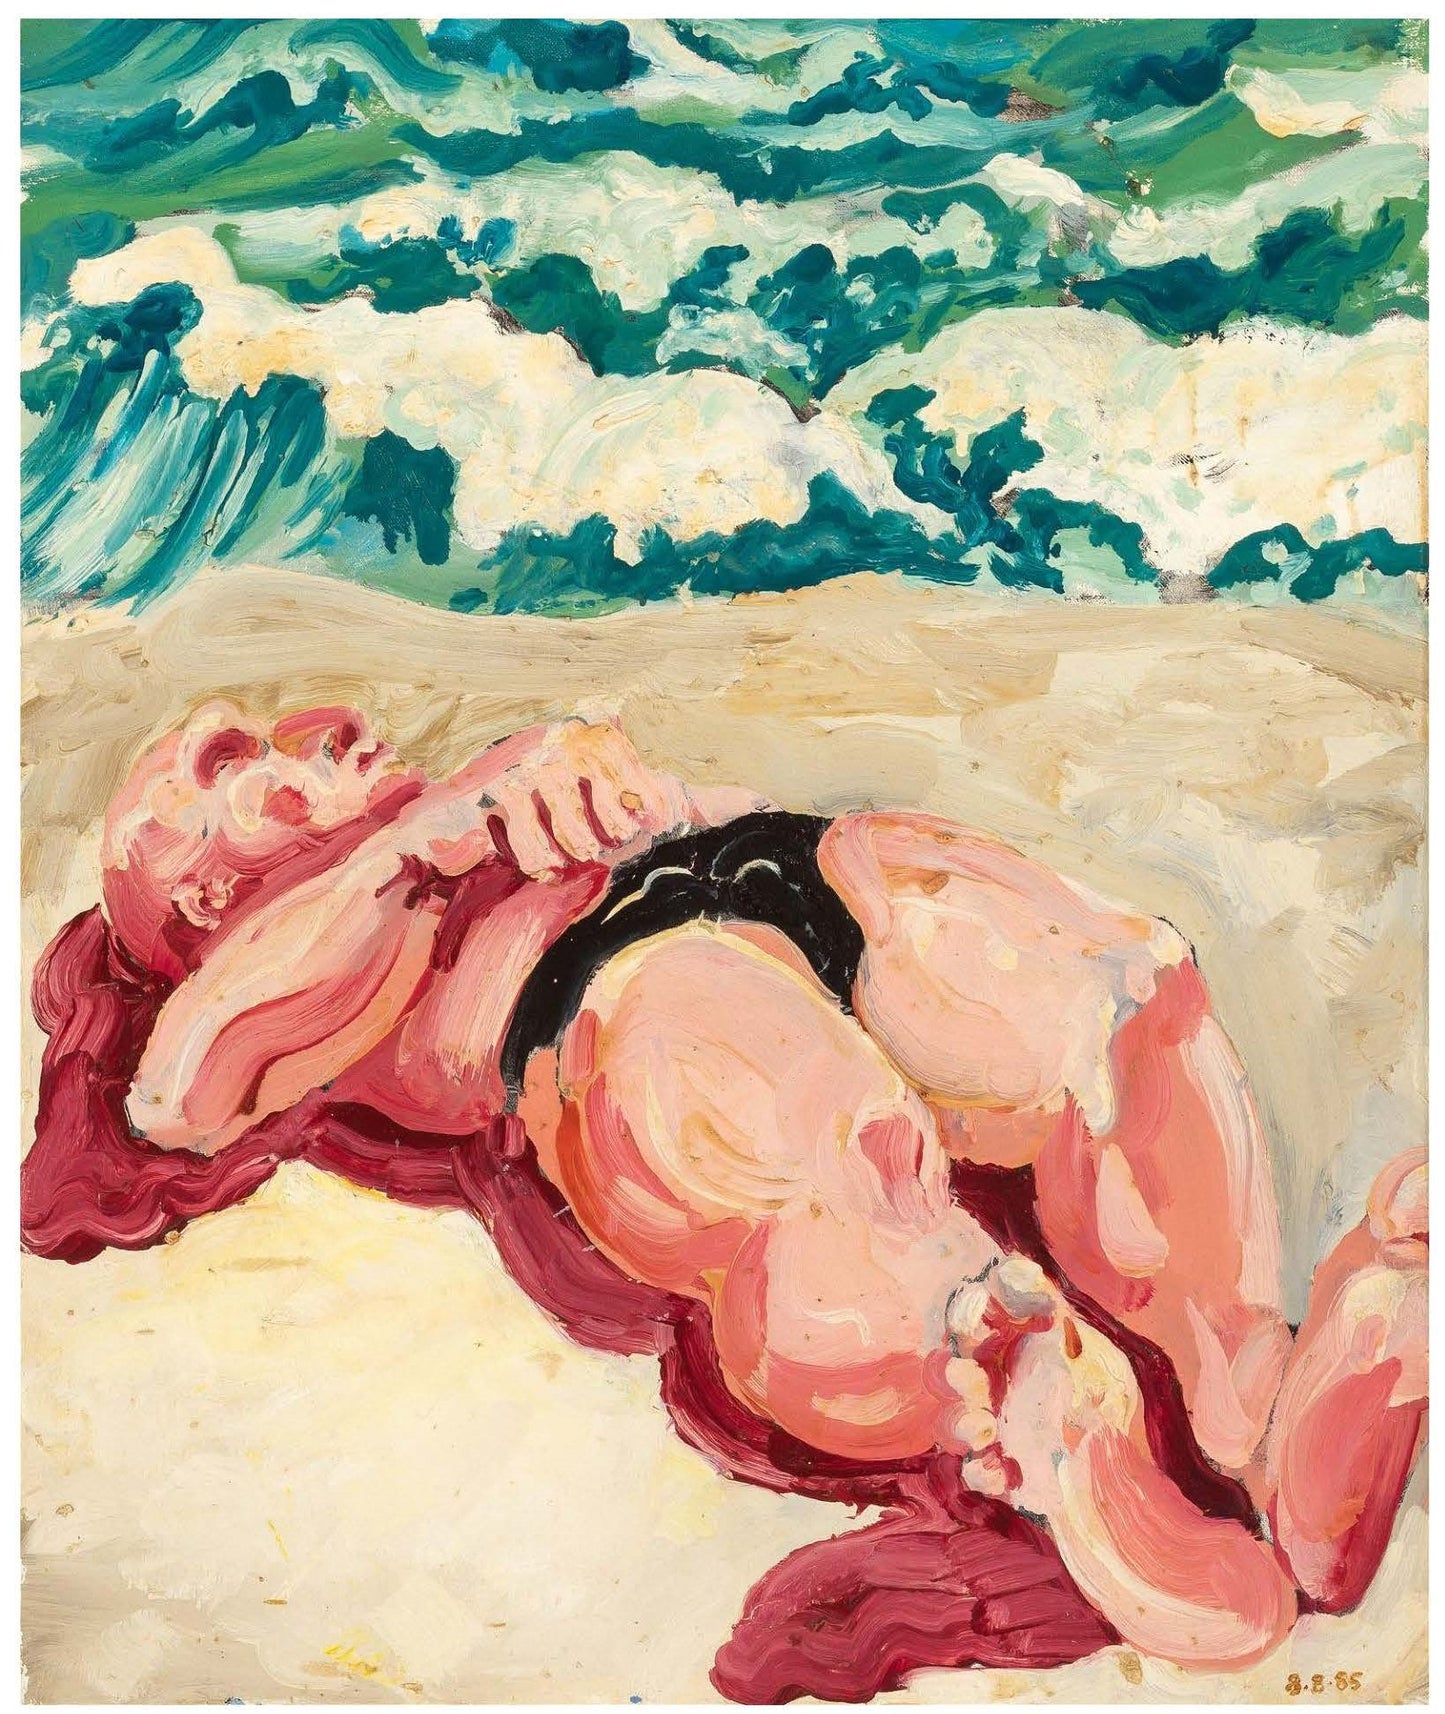 Ben Bianchi, Untitled (Beach Day), 1985